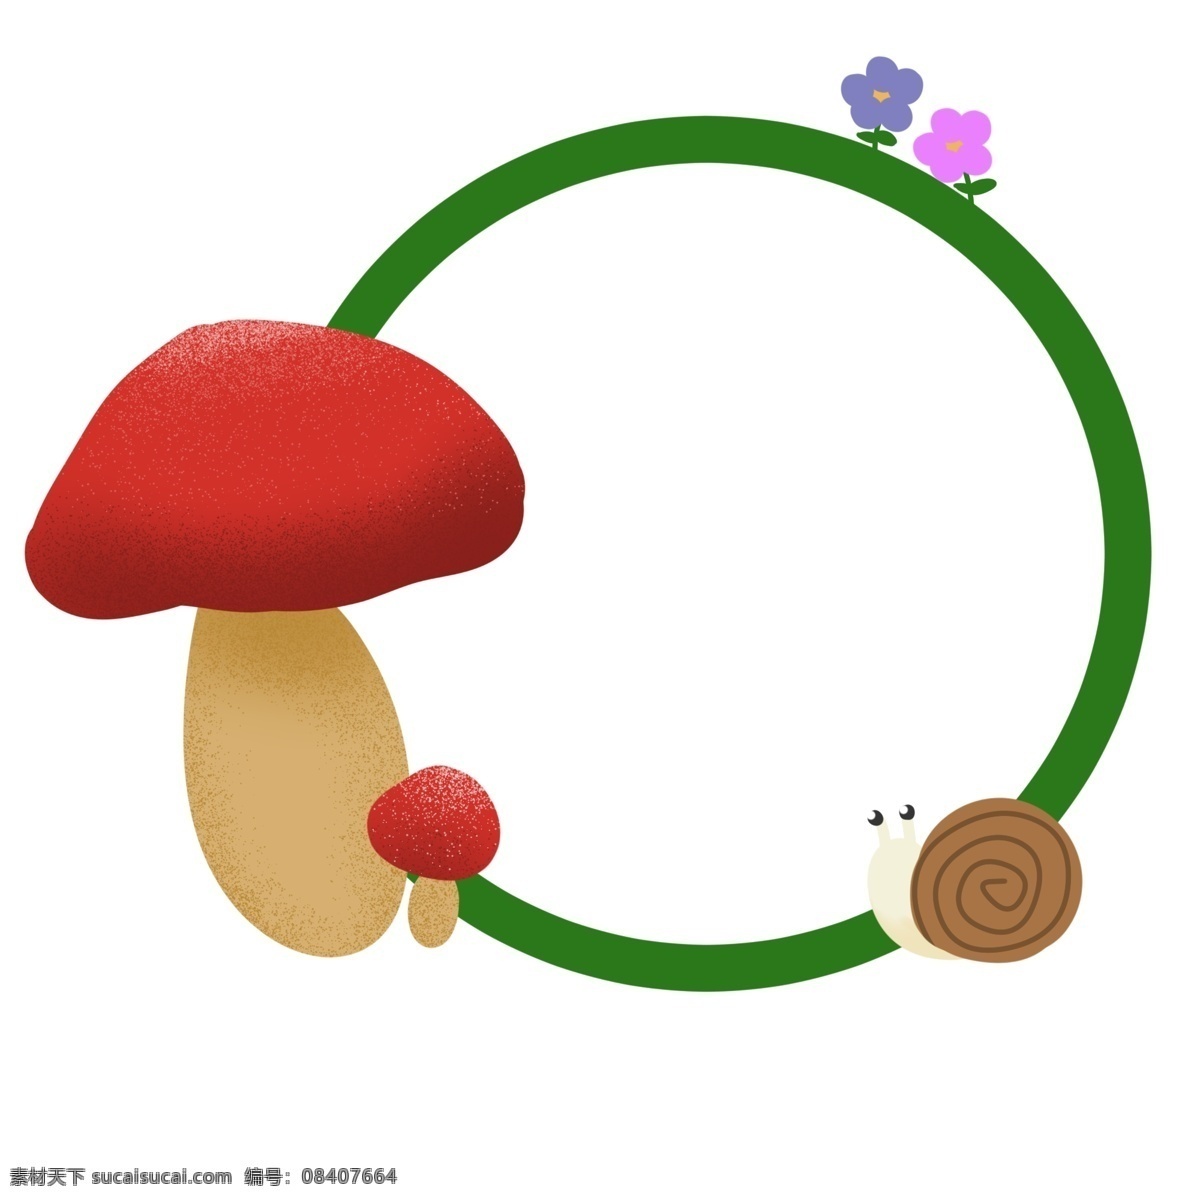 绿色植物 蔬菜 边框 插图 红色蘑菇 白色蜗牛 棕色外壳 粉色花瓣 紫色花瓣 绿色边框 卡通边框